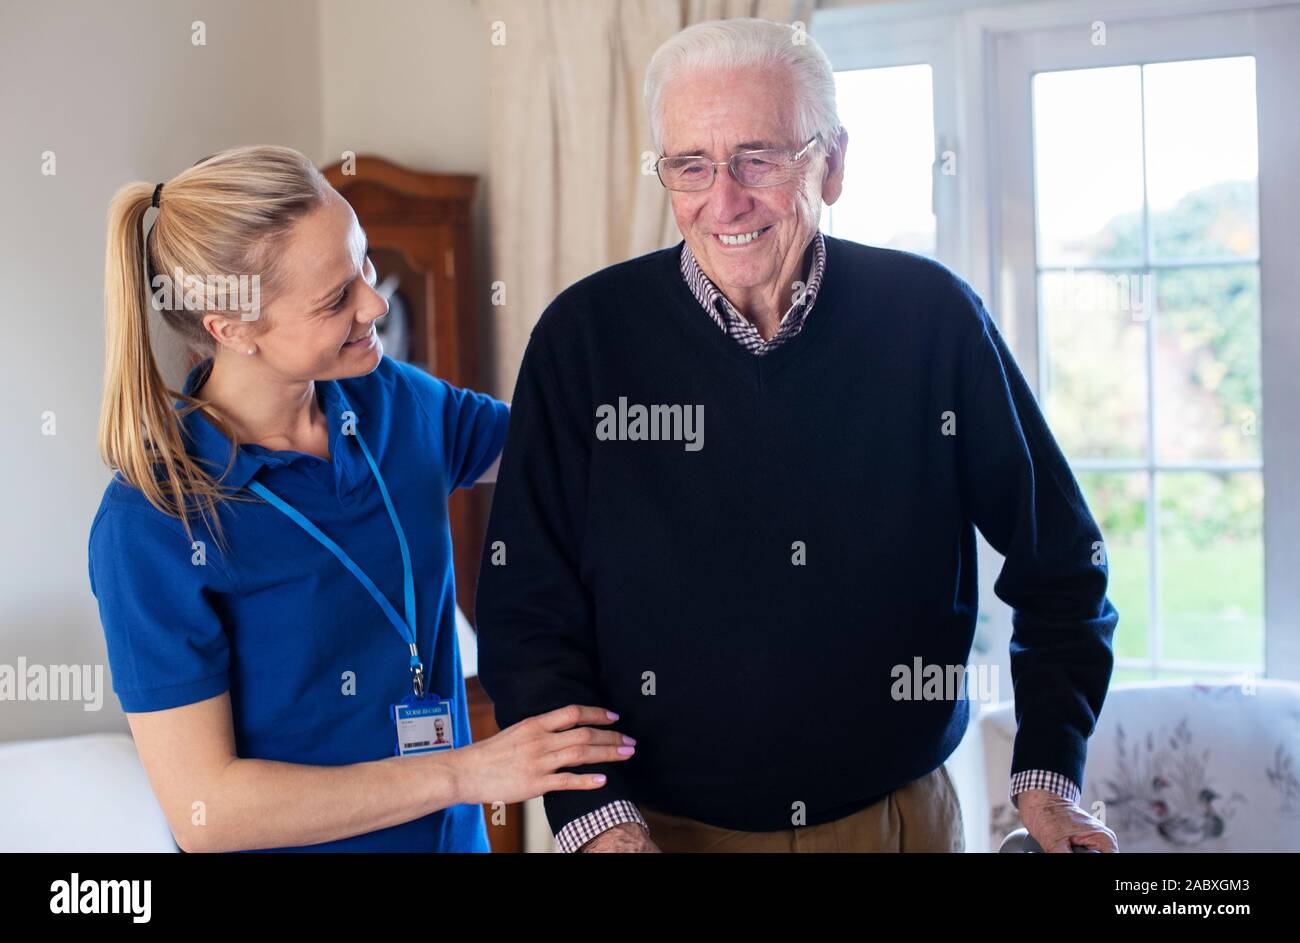 Ältere Menschen mit Gehhilfen durch Care Worker geholfen Stockfoto